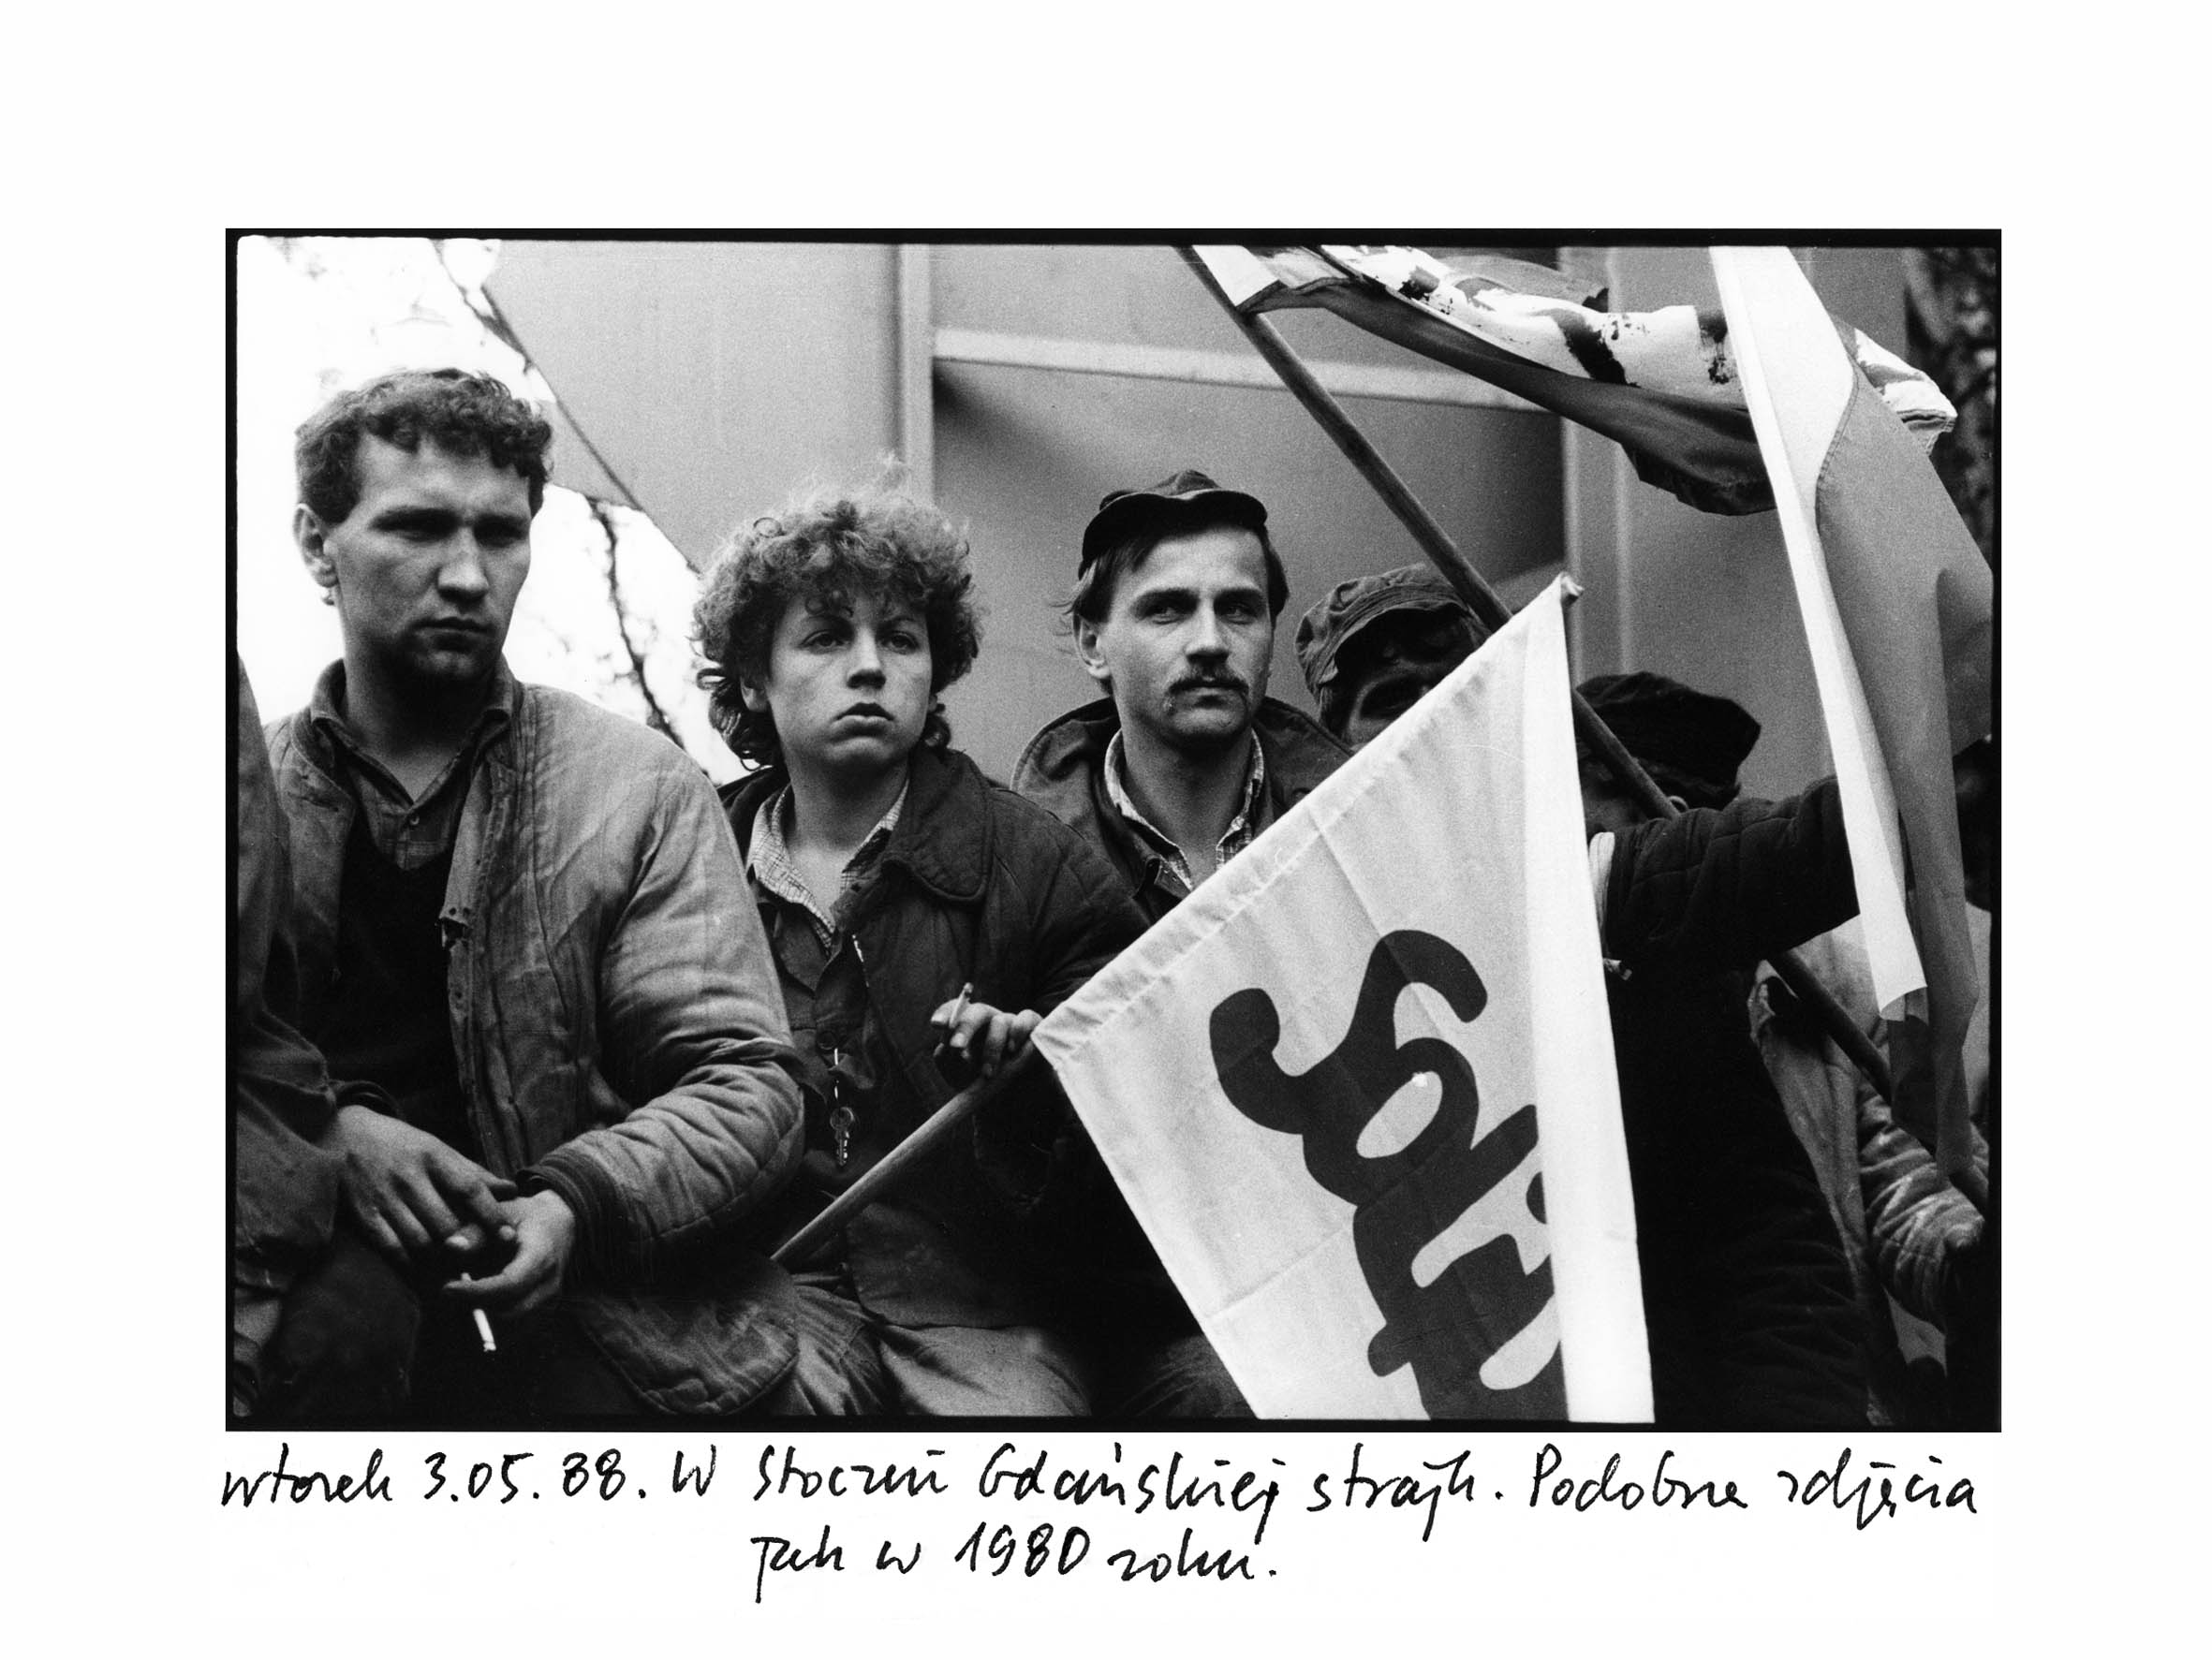 Wtorek 3.05.88. W Stoczni Gadńskiej strajk
              Podobne zdjęcia jak w 1980 roku / Tuesday 3.05.88. Strike
              in the Gdańsk Shipyard Photos similar to those from 1980
              / Kedd 1988.05.3. Sztrjk a gdanski Hajgyrban ...
              Hasonl kpek, mint 1980-ban